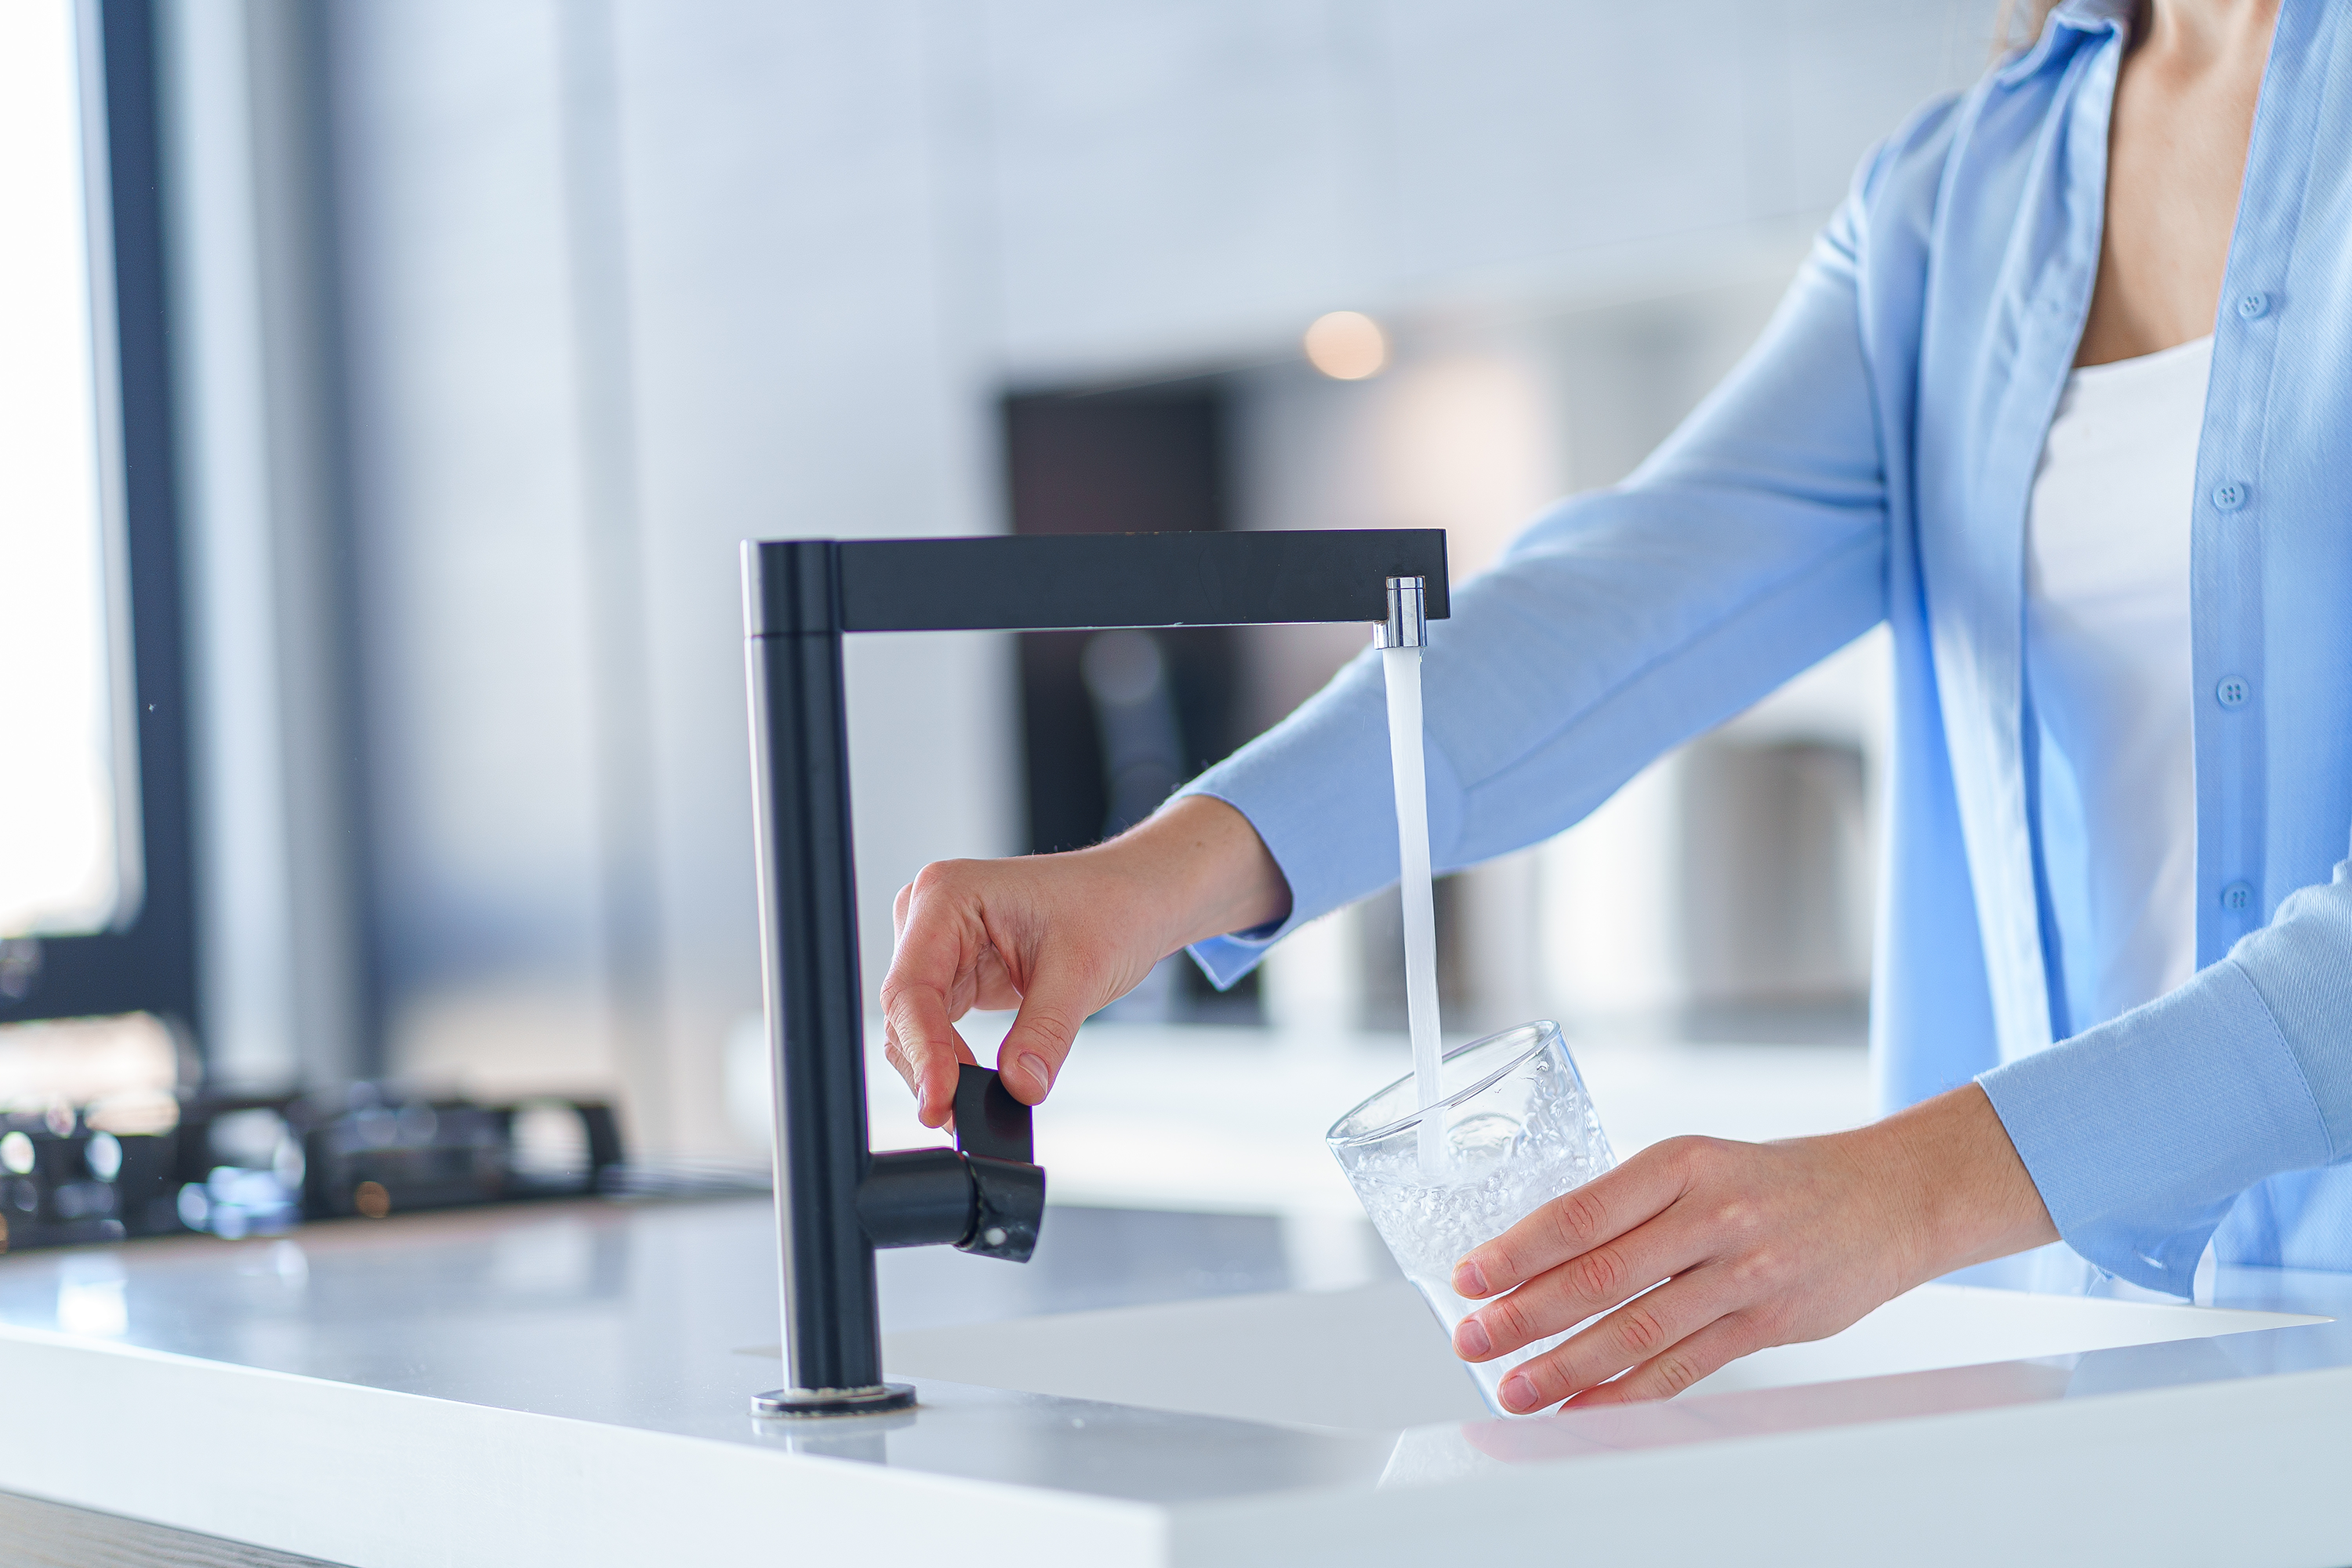 Frau im blauen Hemd füllt ein Glas mit Leitungswasser